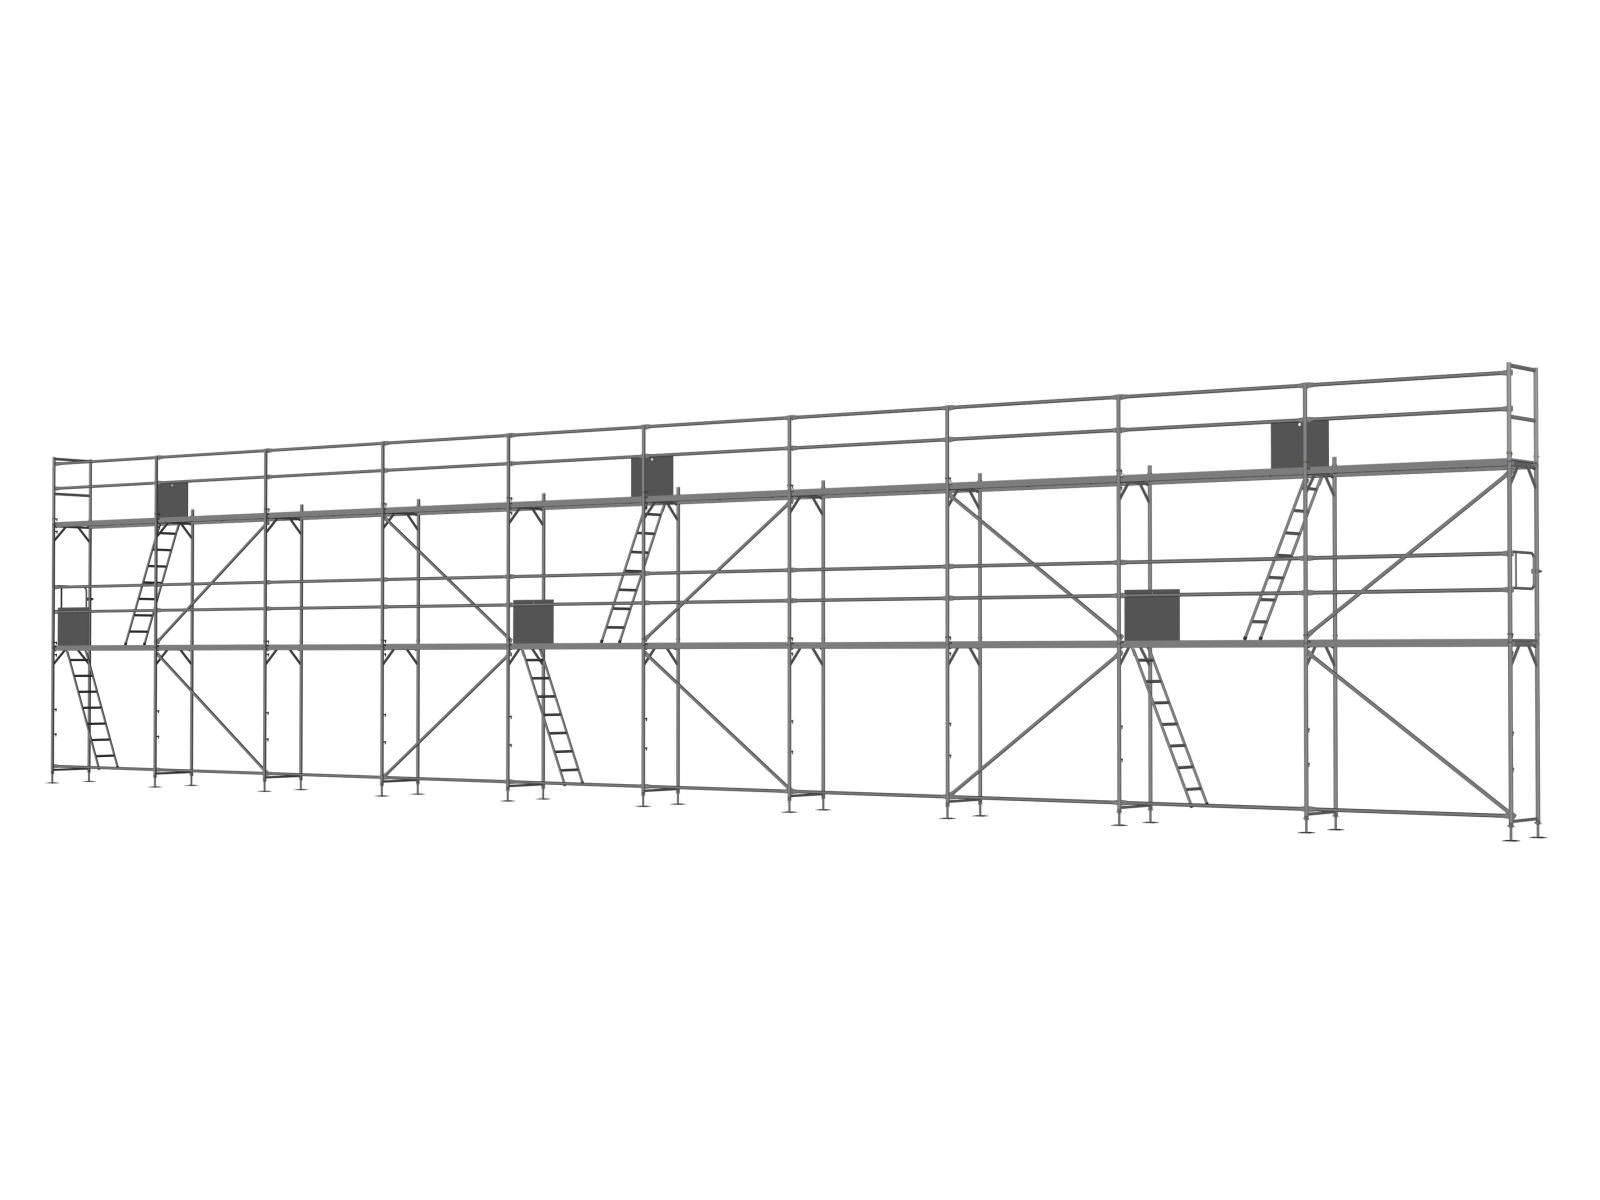 Alu Traufseitengerüst 150 qm - 2,5 m Felder - 25 m lang - 6 m Arbeitshöhe - Basis-Gerüst inkl. Aufstieg & Befestigung